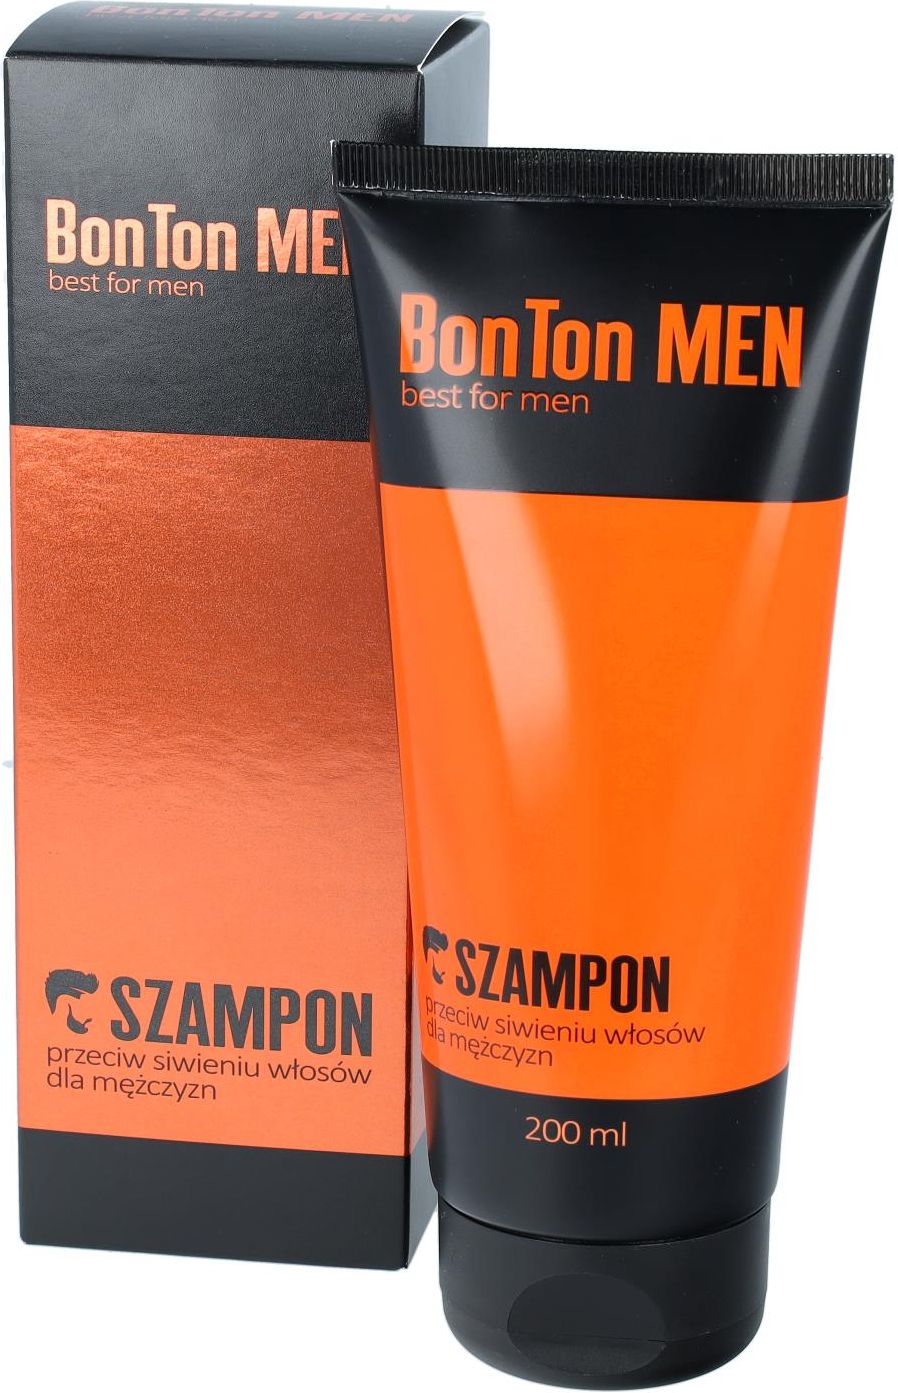 szampon dla mężczyzn przeciw siwieniu opinie